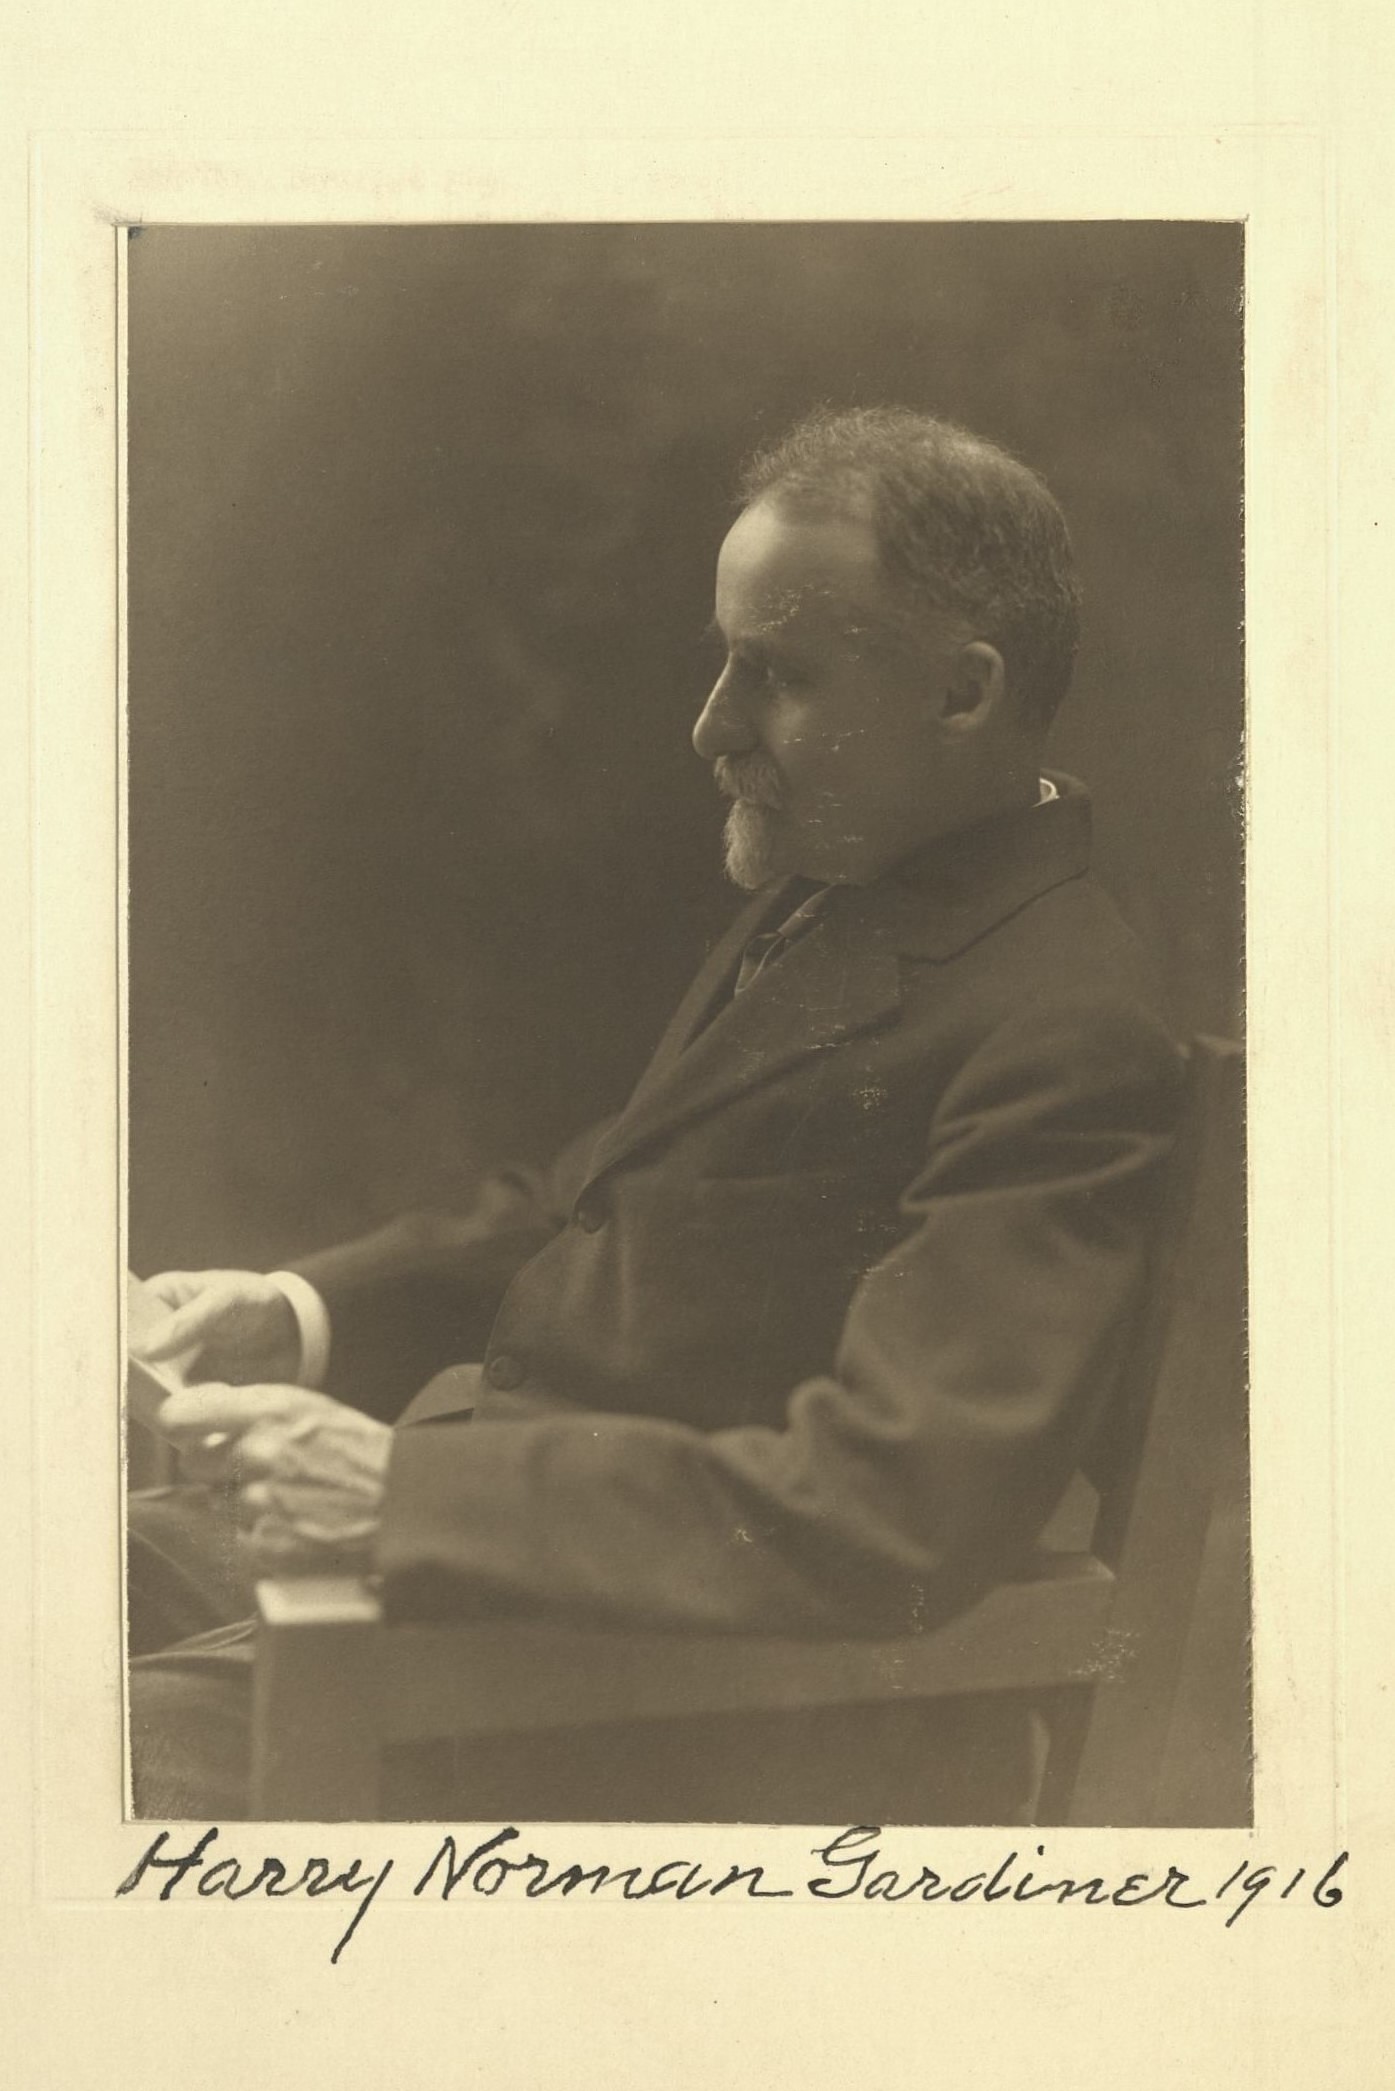 Member portrait of H. Norman Gardiner